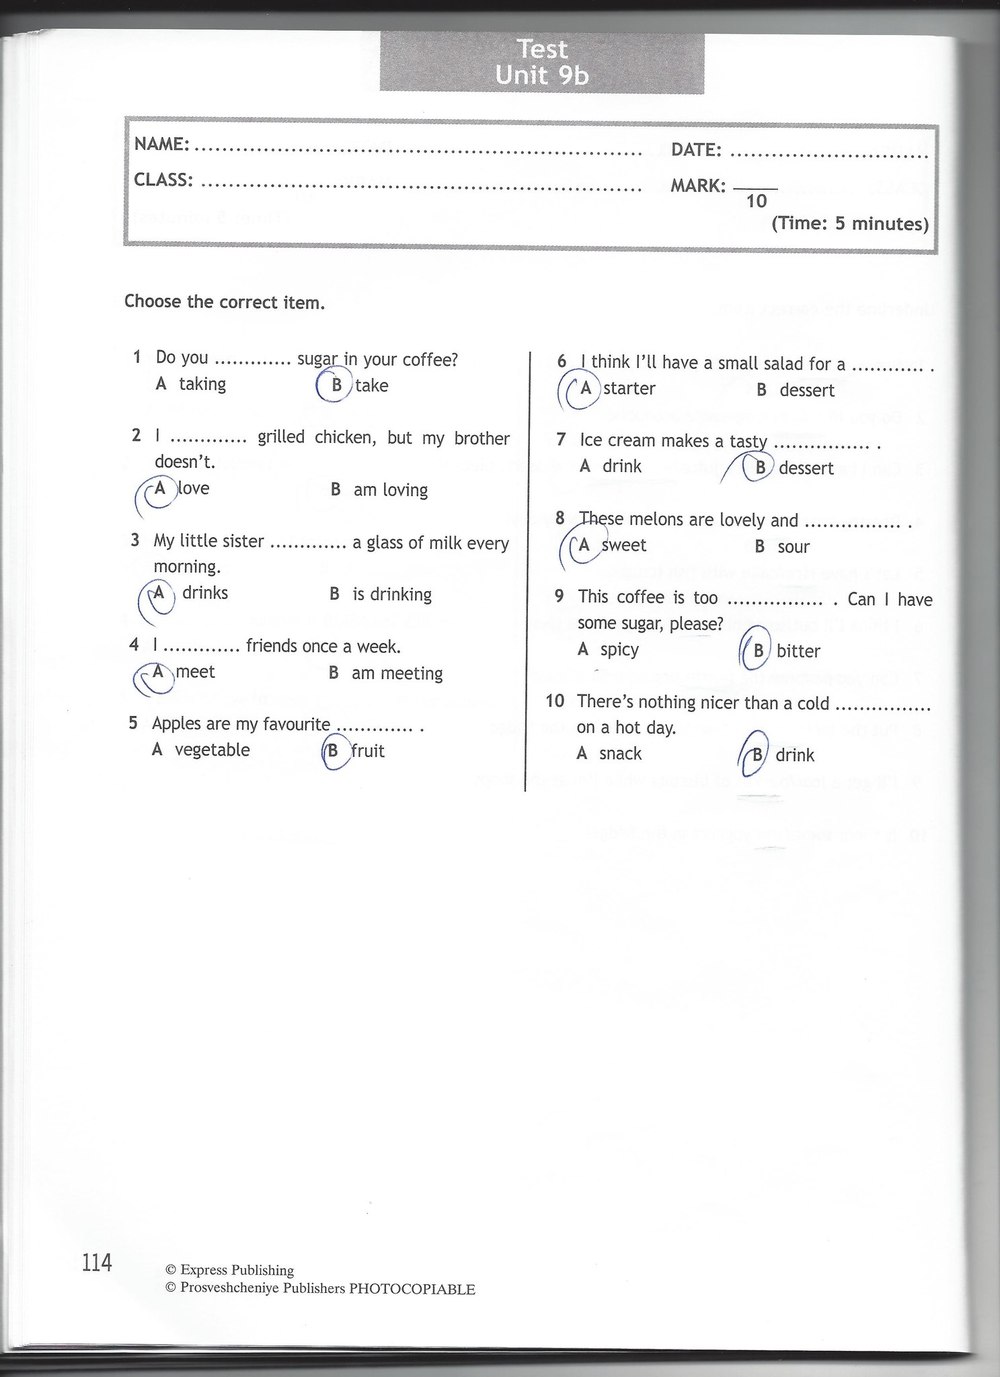 Тест бук 6 класс ответы. Тест буклет 6 класс Spotlight тест 2. Тест бук 6 класс Spotlight задания. Test booklet 6 класс.